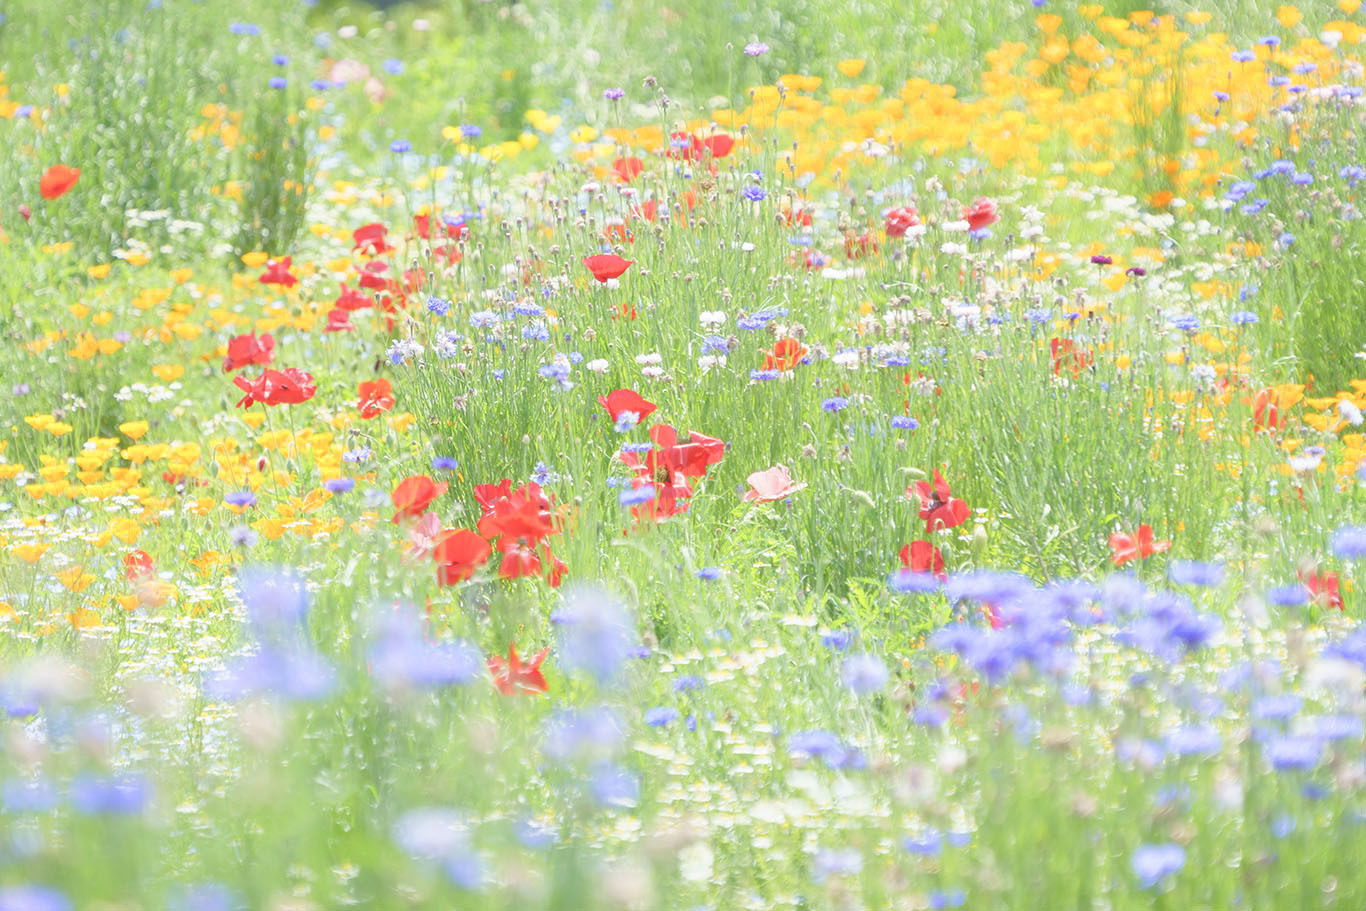 スイスのお花畑のようだった昭和記念公園 エーデルワイスphoto